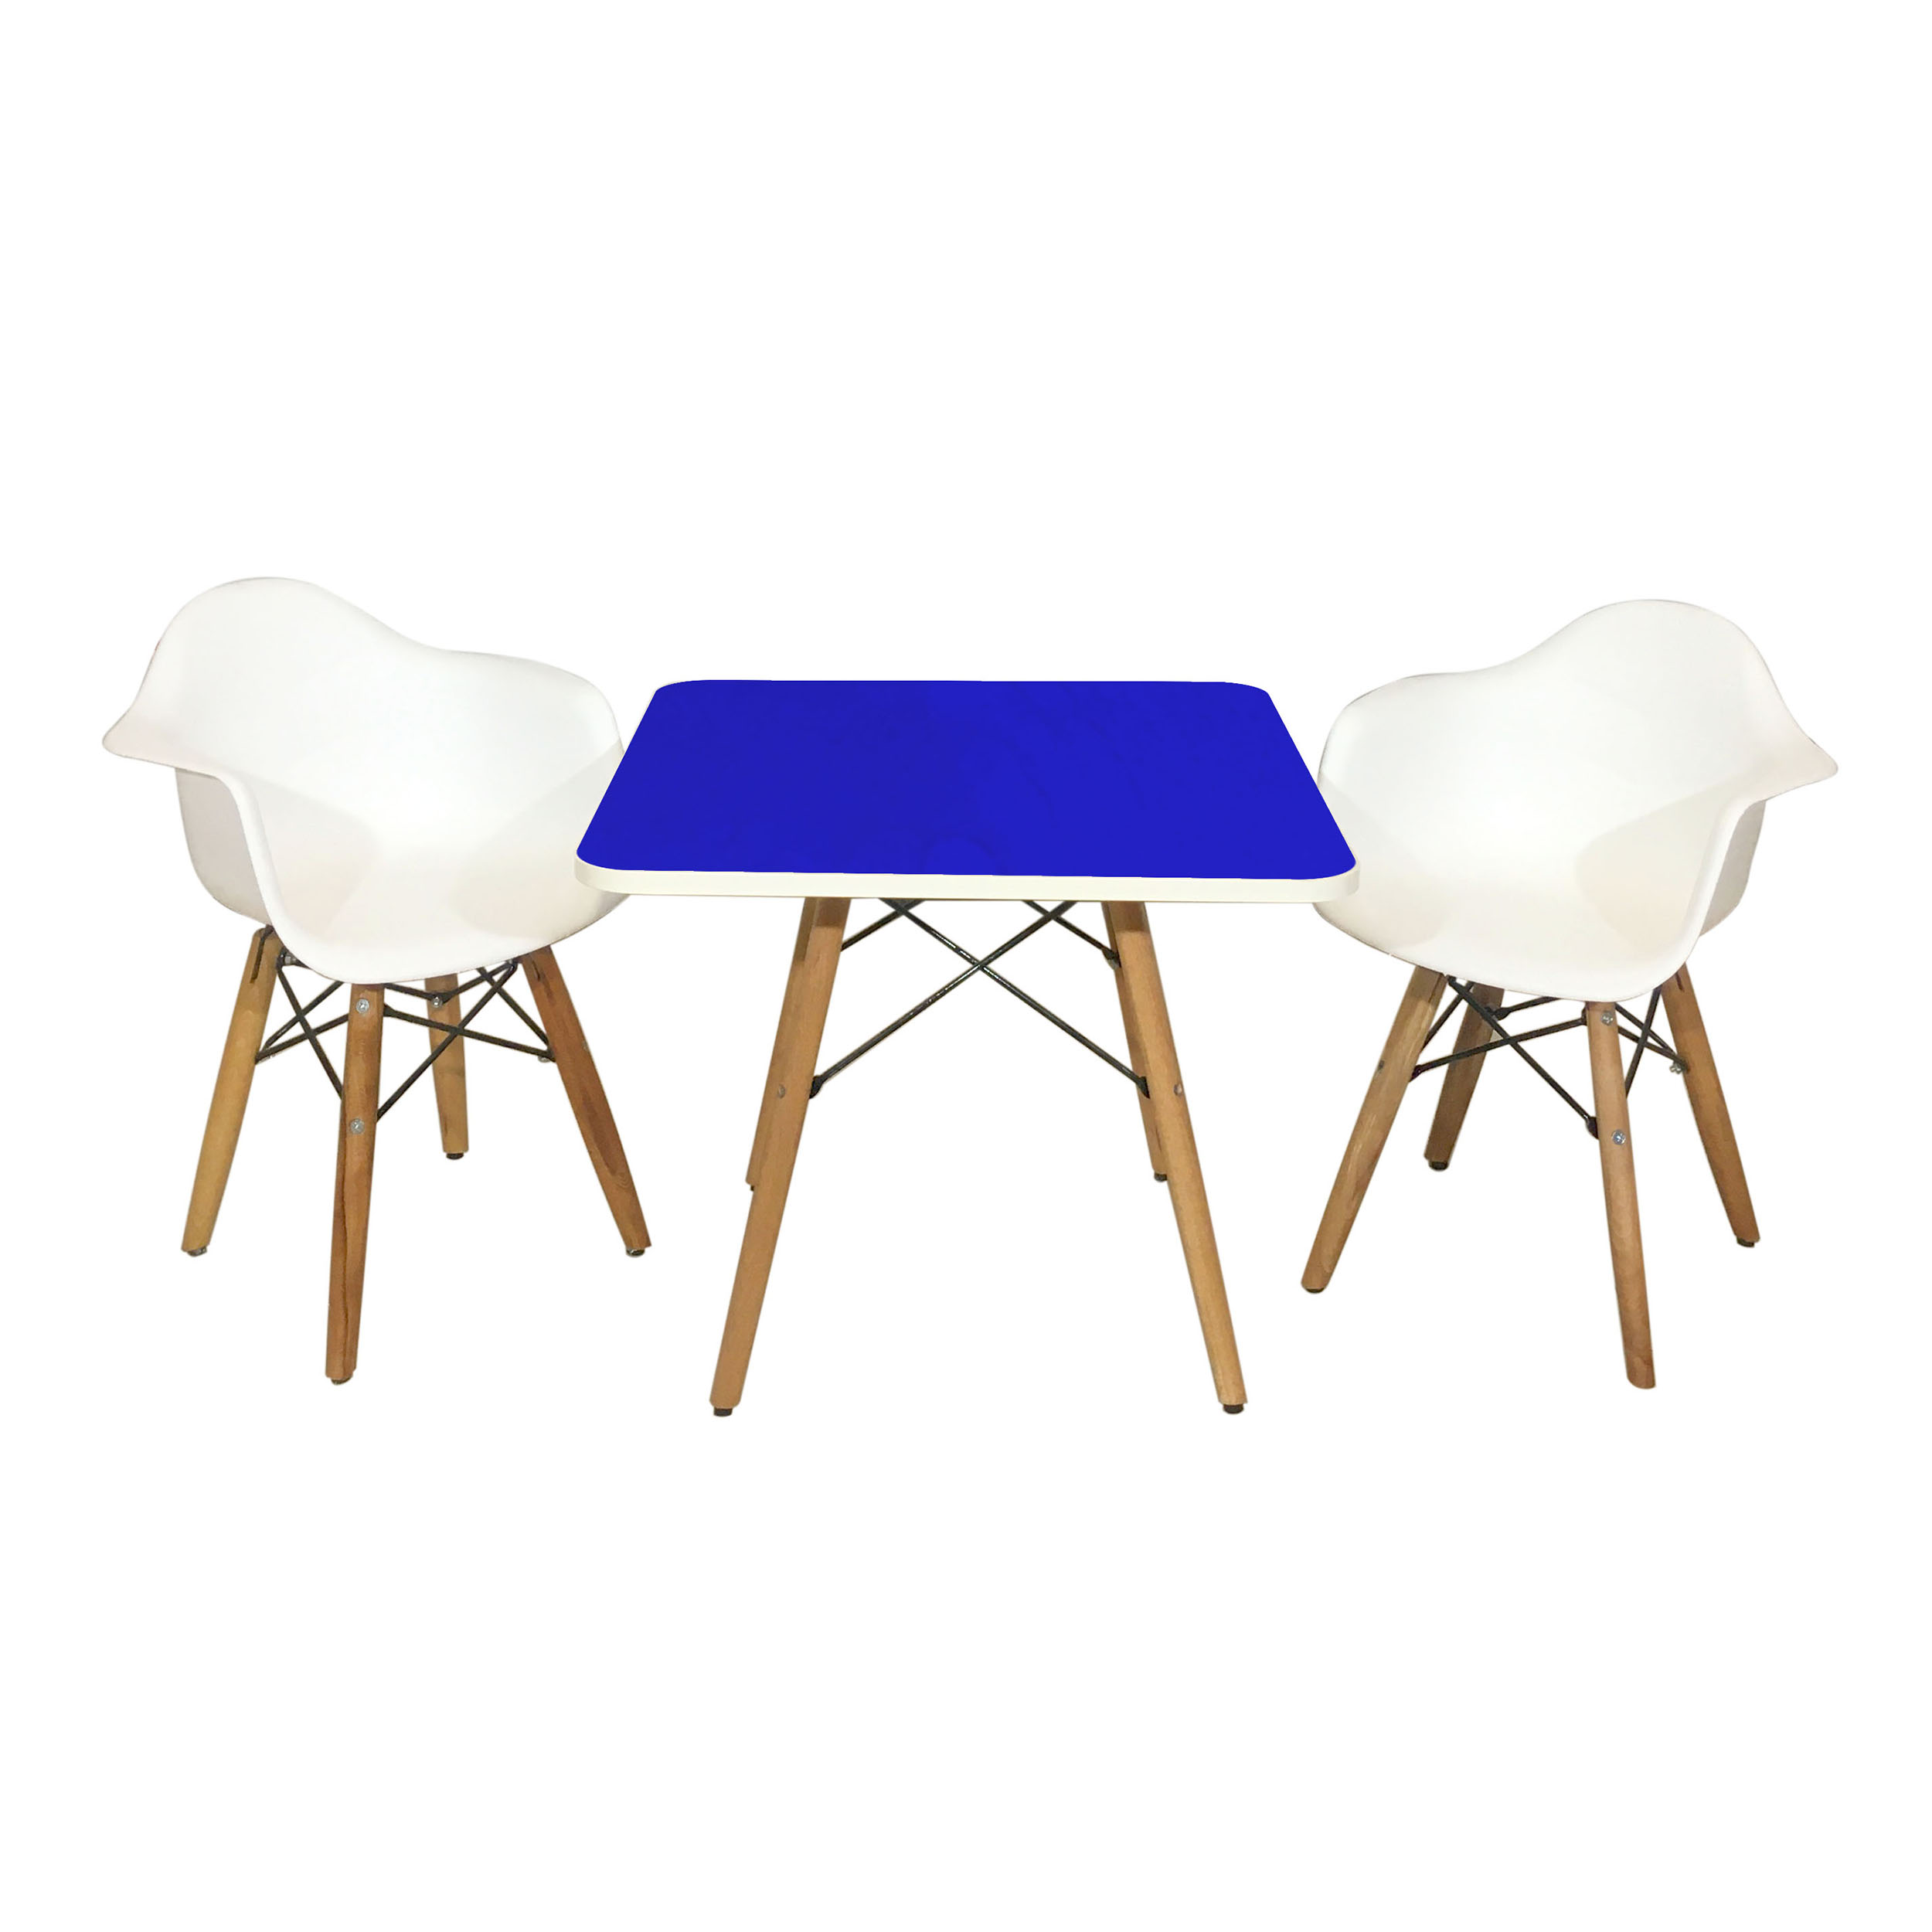 ست میز و صندلی کودک مدل ایفل کد Design-3